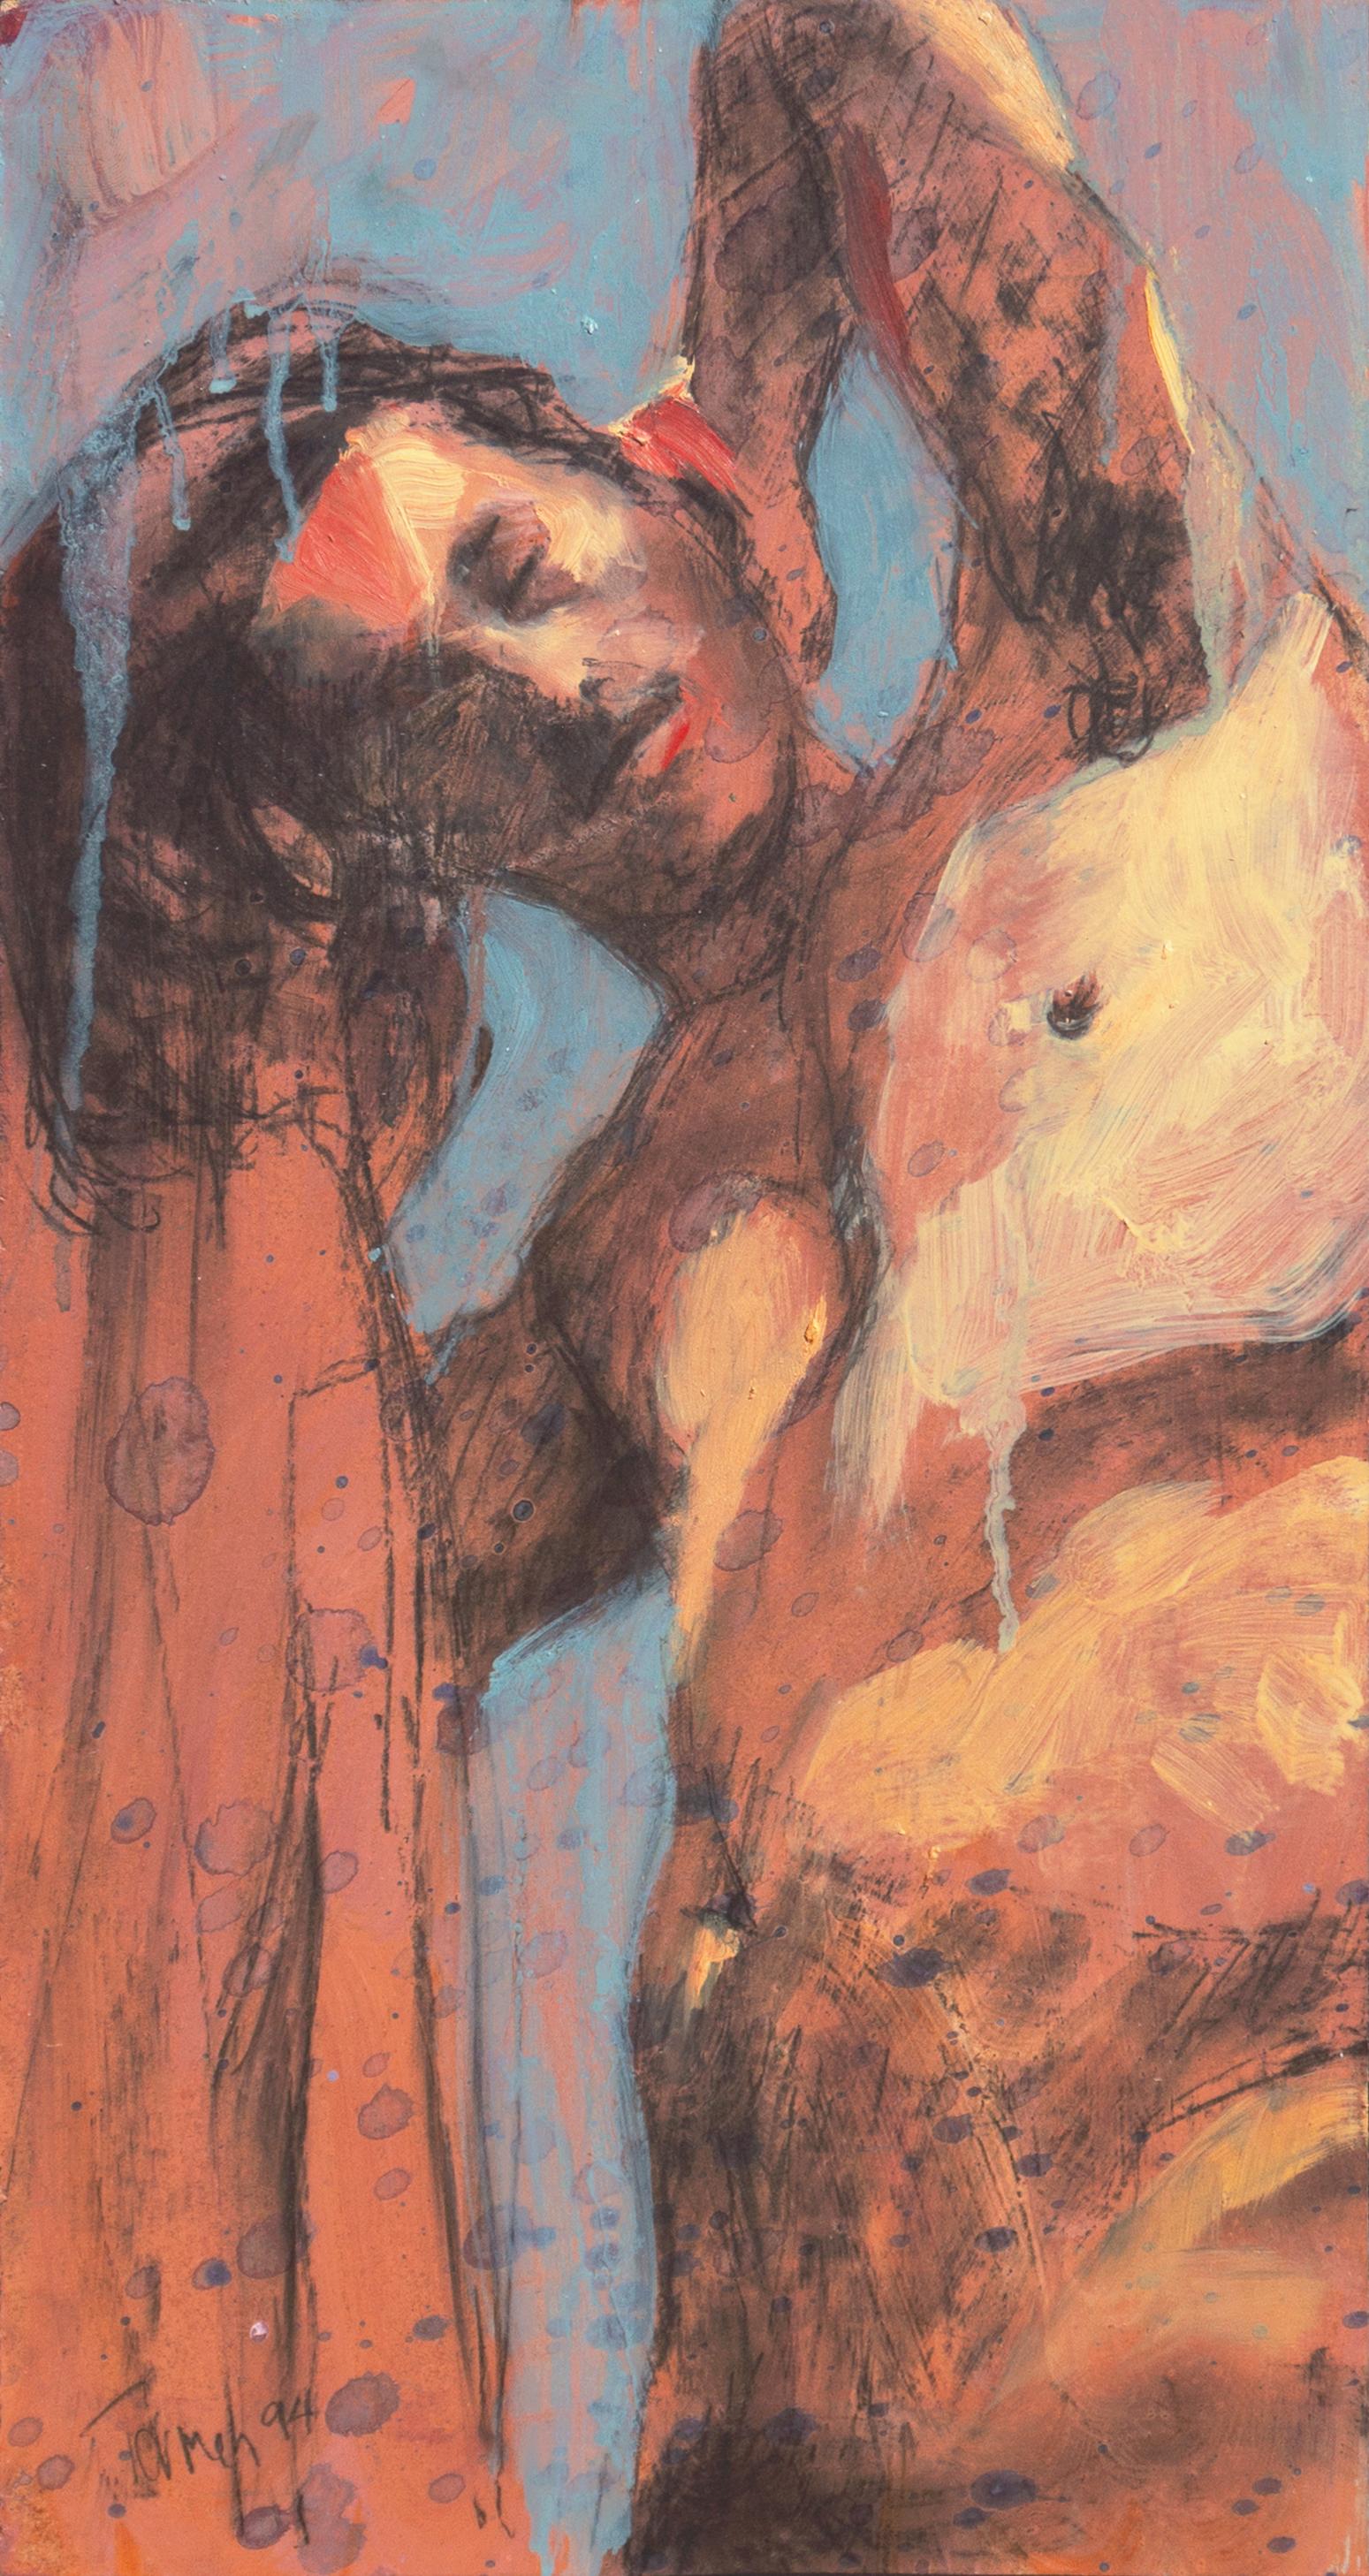 Termeh Yeghiazarian Nude Painting – „Standender Akt“, figürlich, iranisch, Teheran, San Francisco Bay Area, SFAI